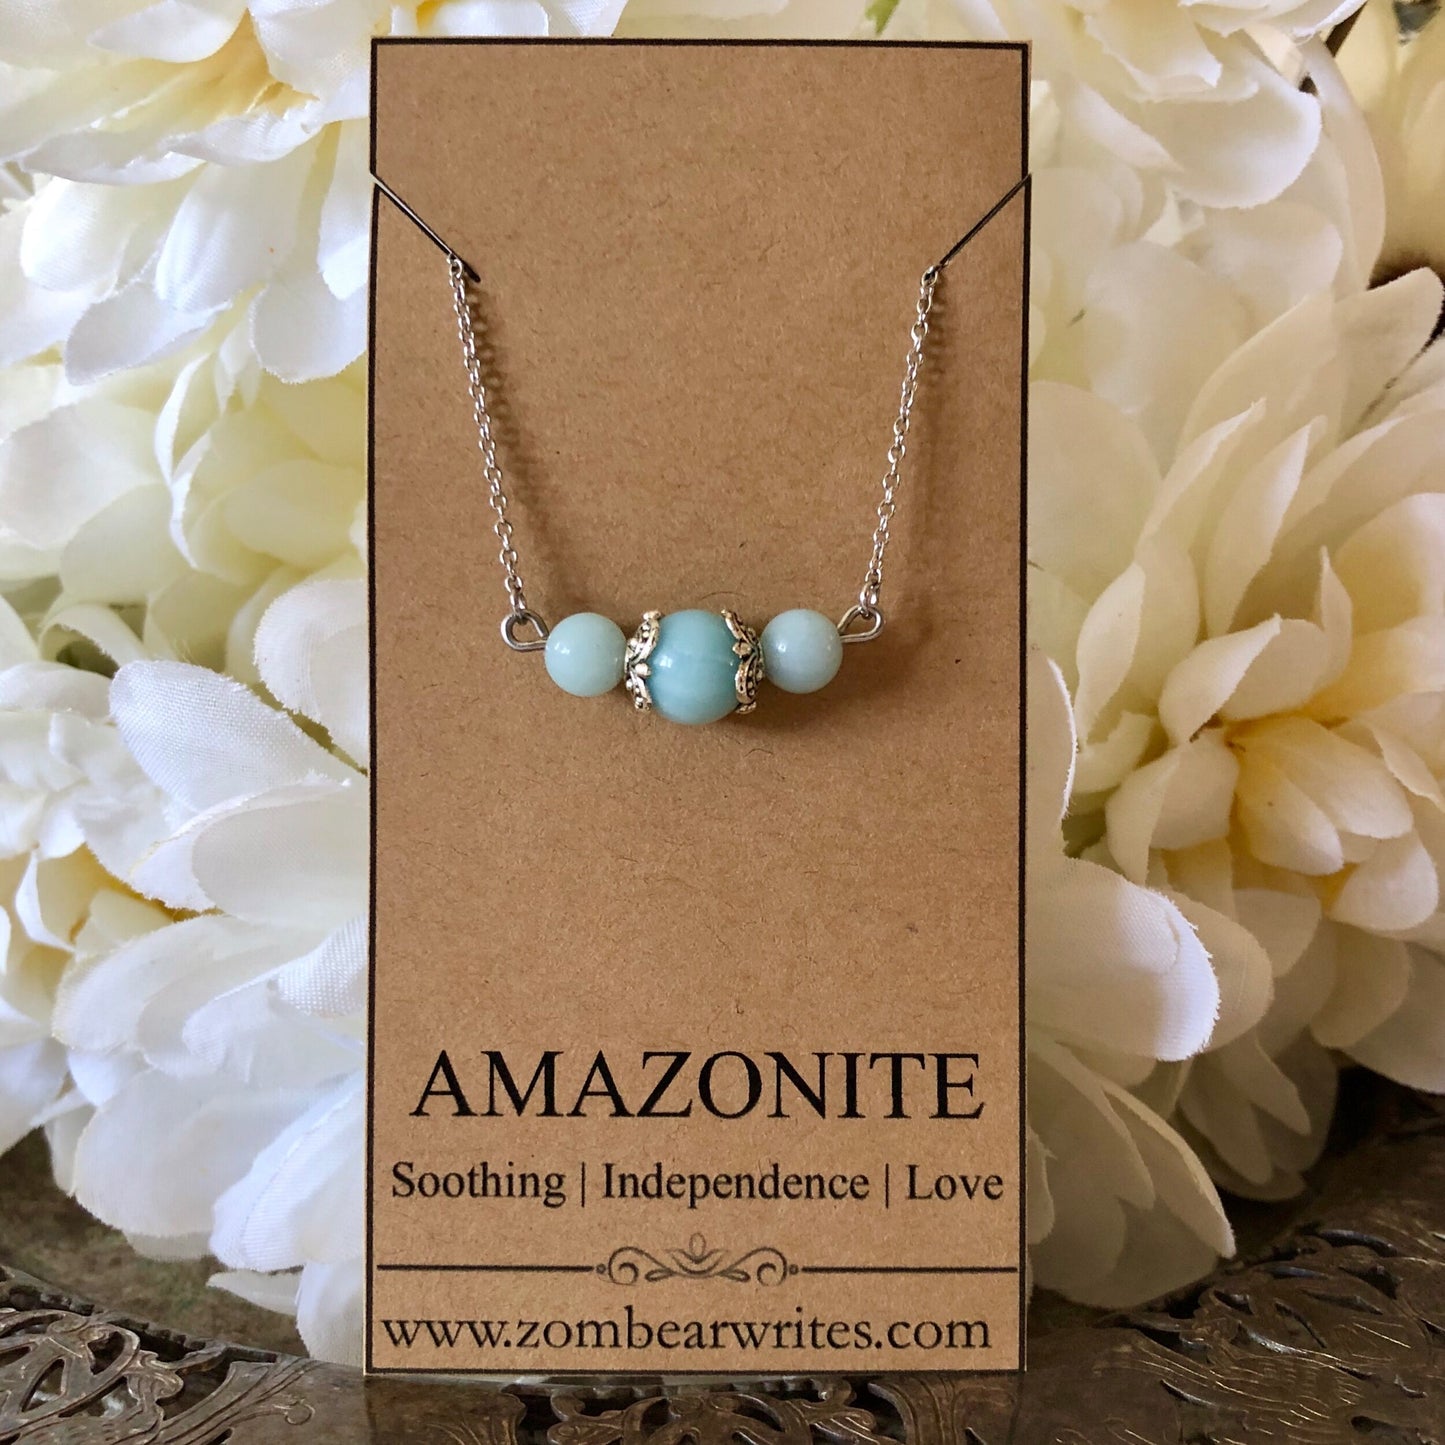 Amazonite Natural Gemstone Necklace